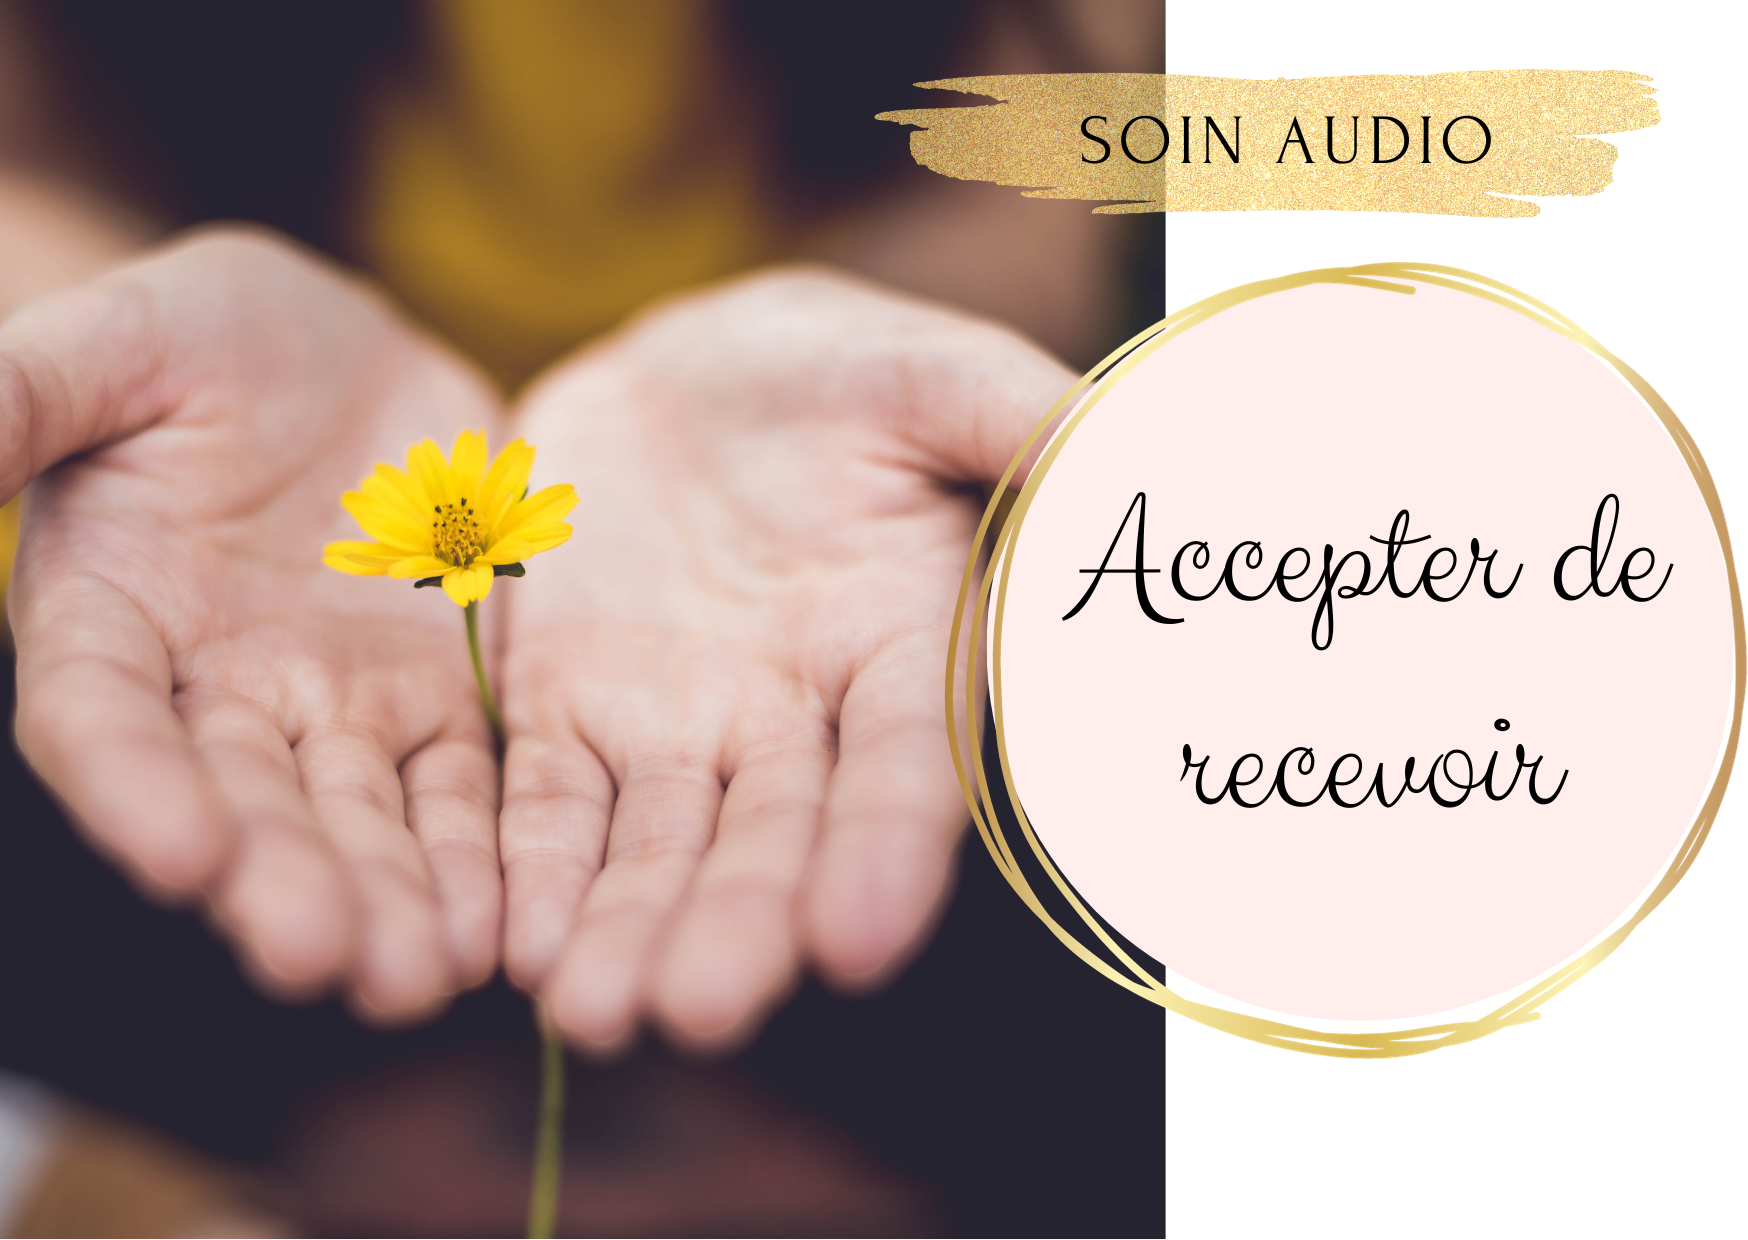 Soin audio – Accepter de recevoir